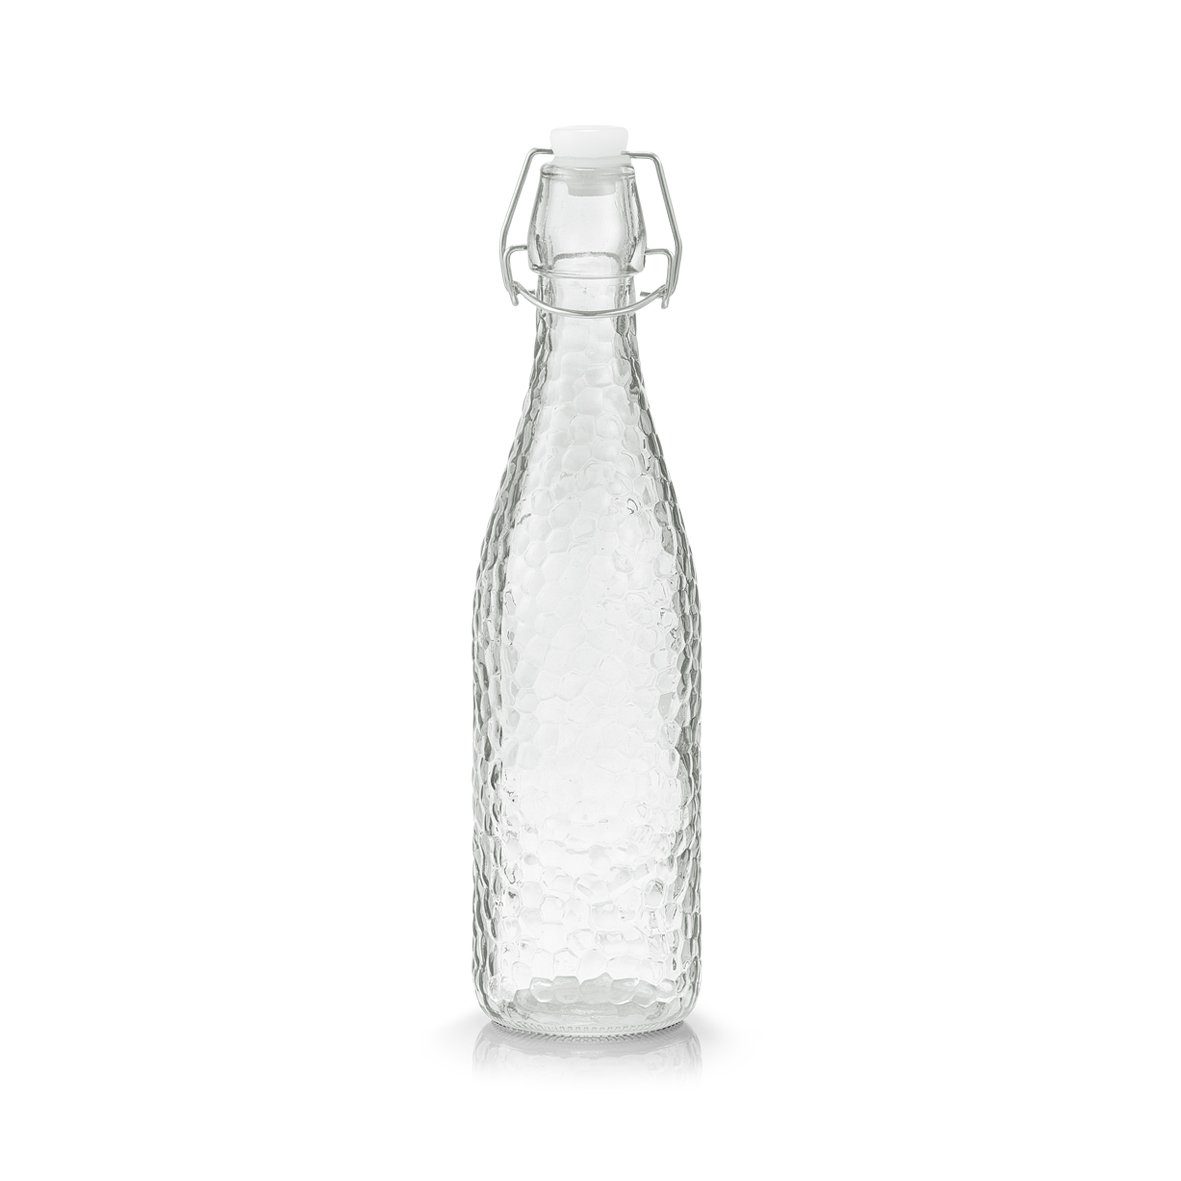 Zeller Present Trinkflasche »Glasflasche m. Bügelverschluss«, 500 ml, Glas/PP/Silikon/Metall,  transparent, Ø7 x 28 cm online kaufen | OTTO